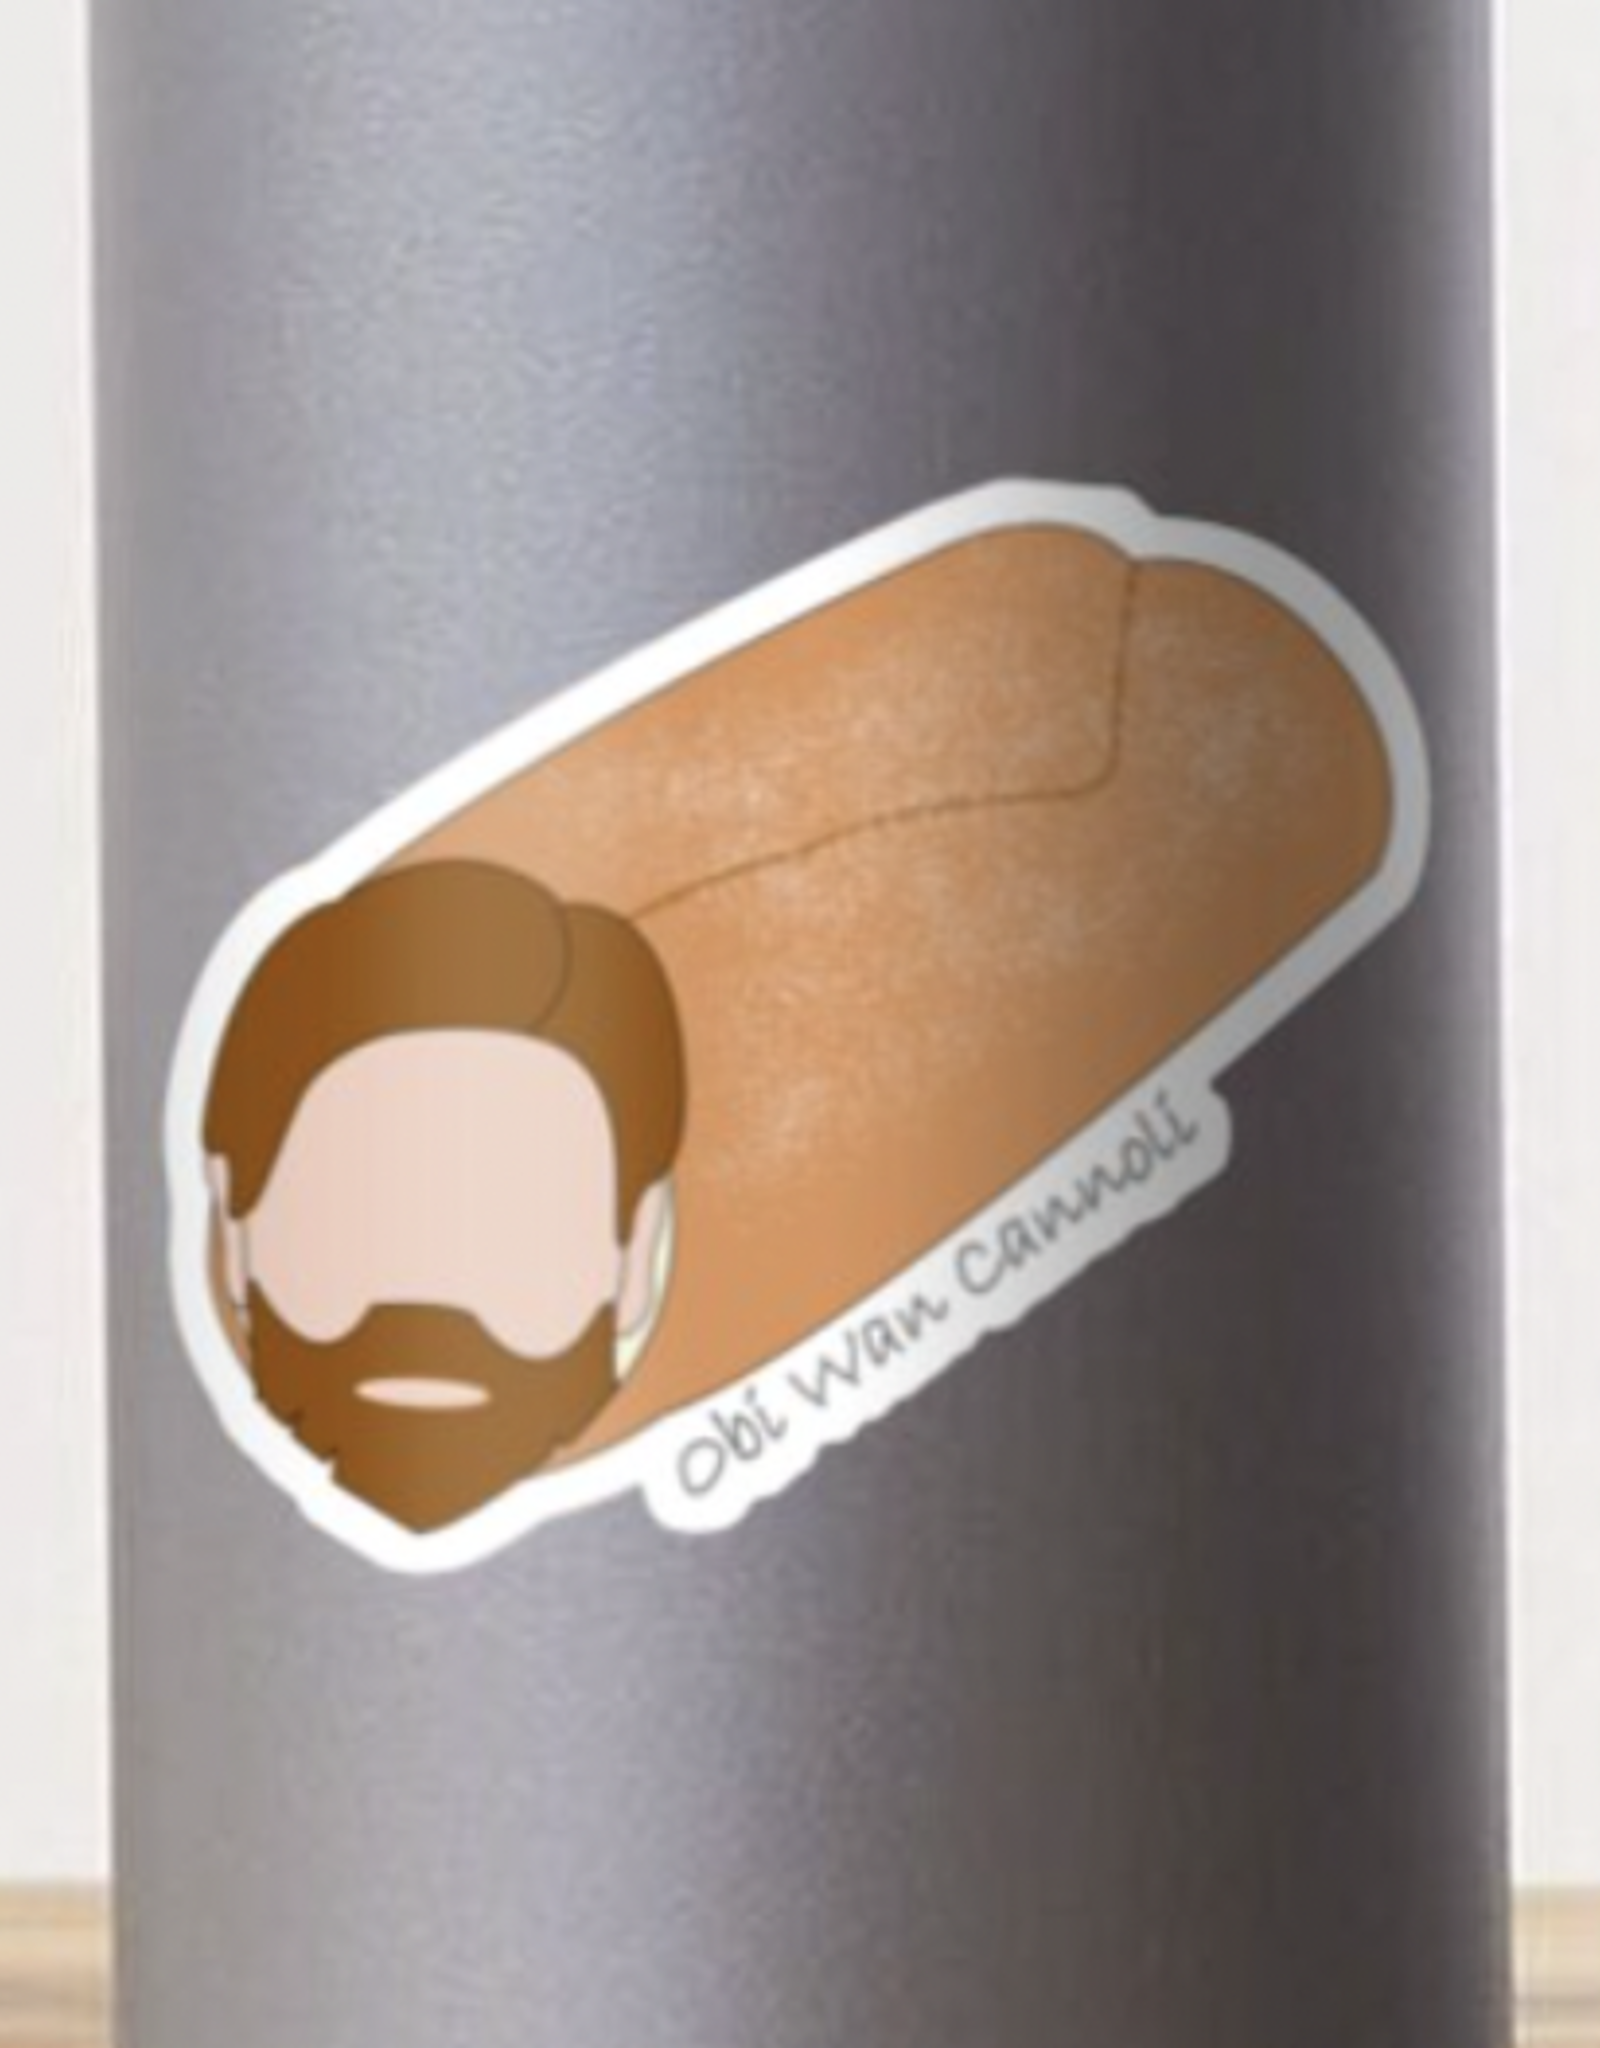 Obi Wan Cannoli Sticker